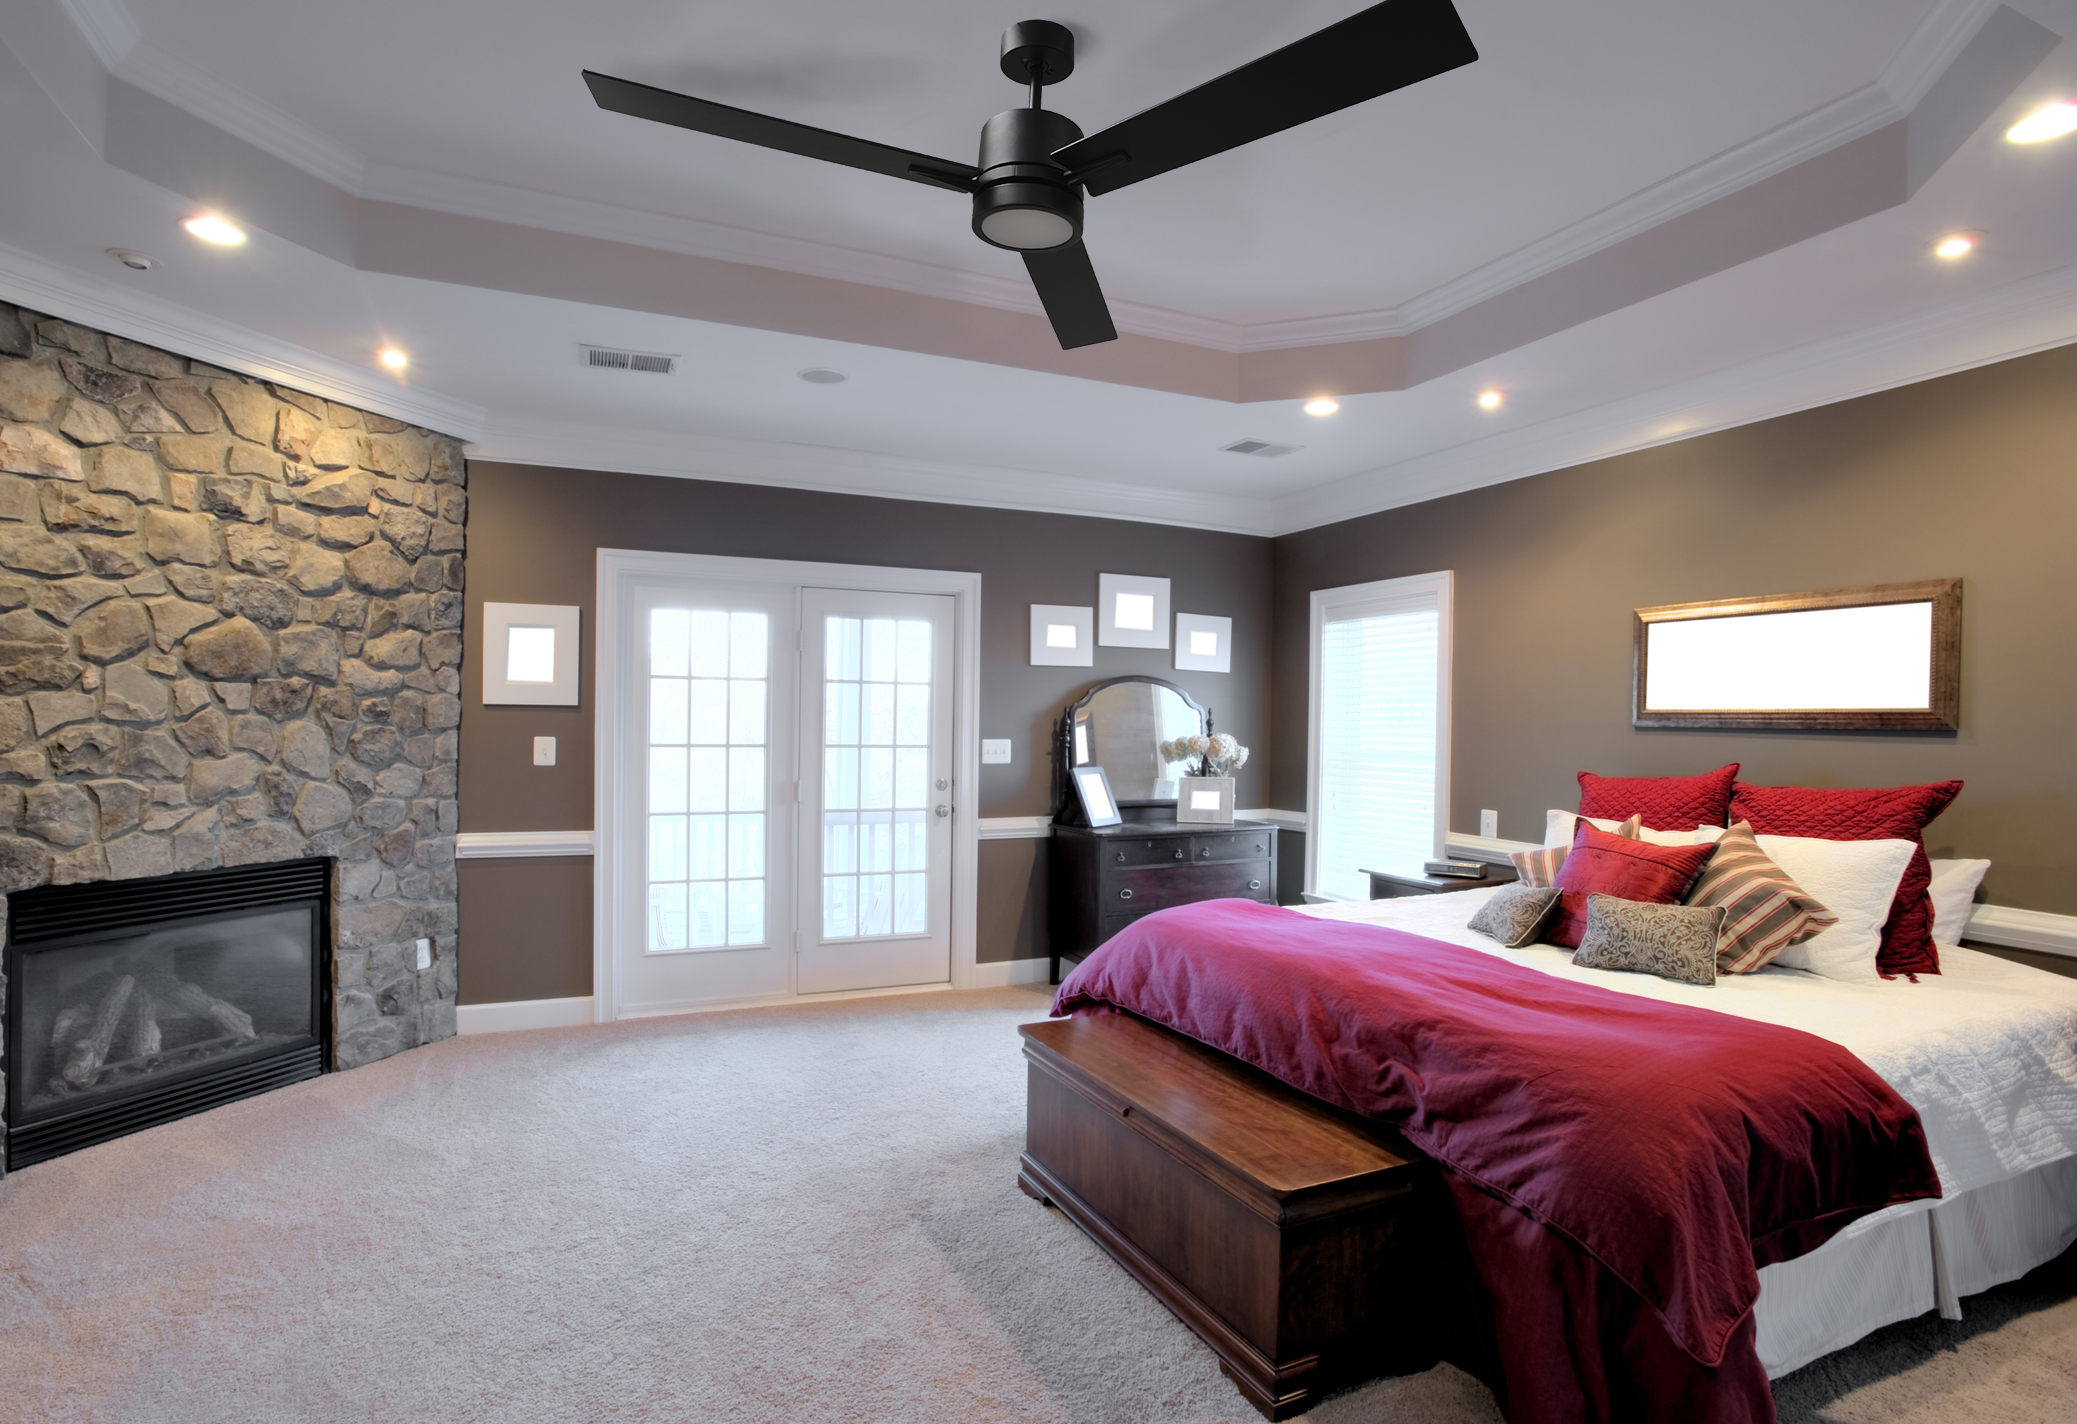 Farmhouse ceiling fan for bedroom matte black